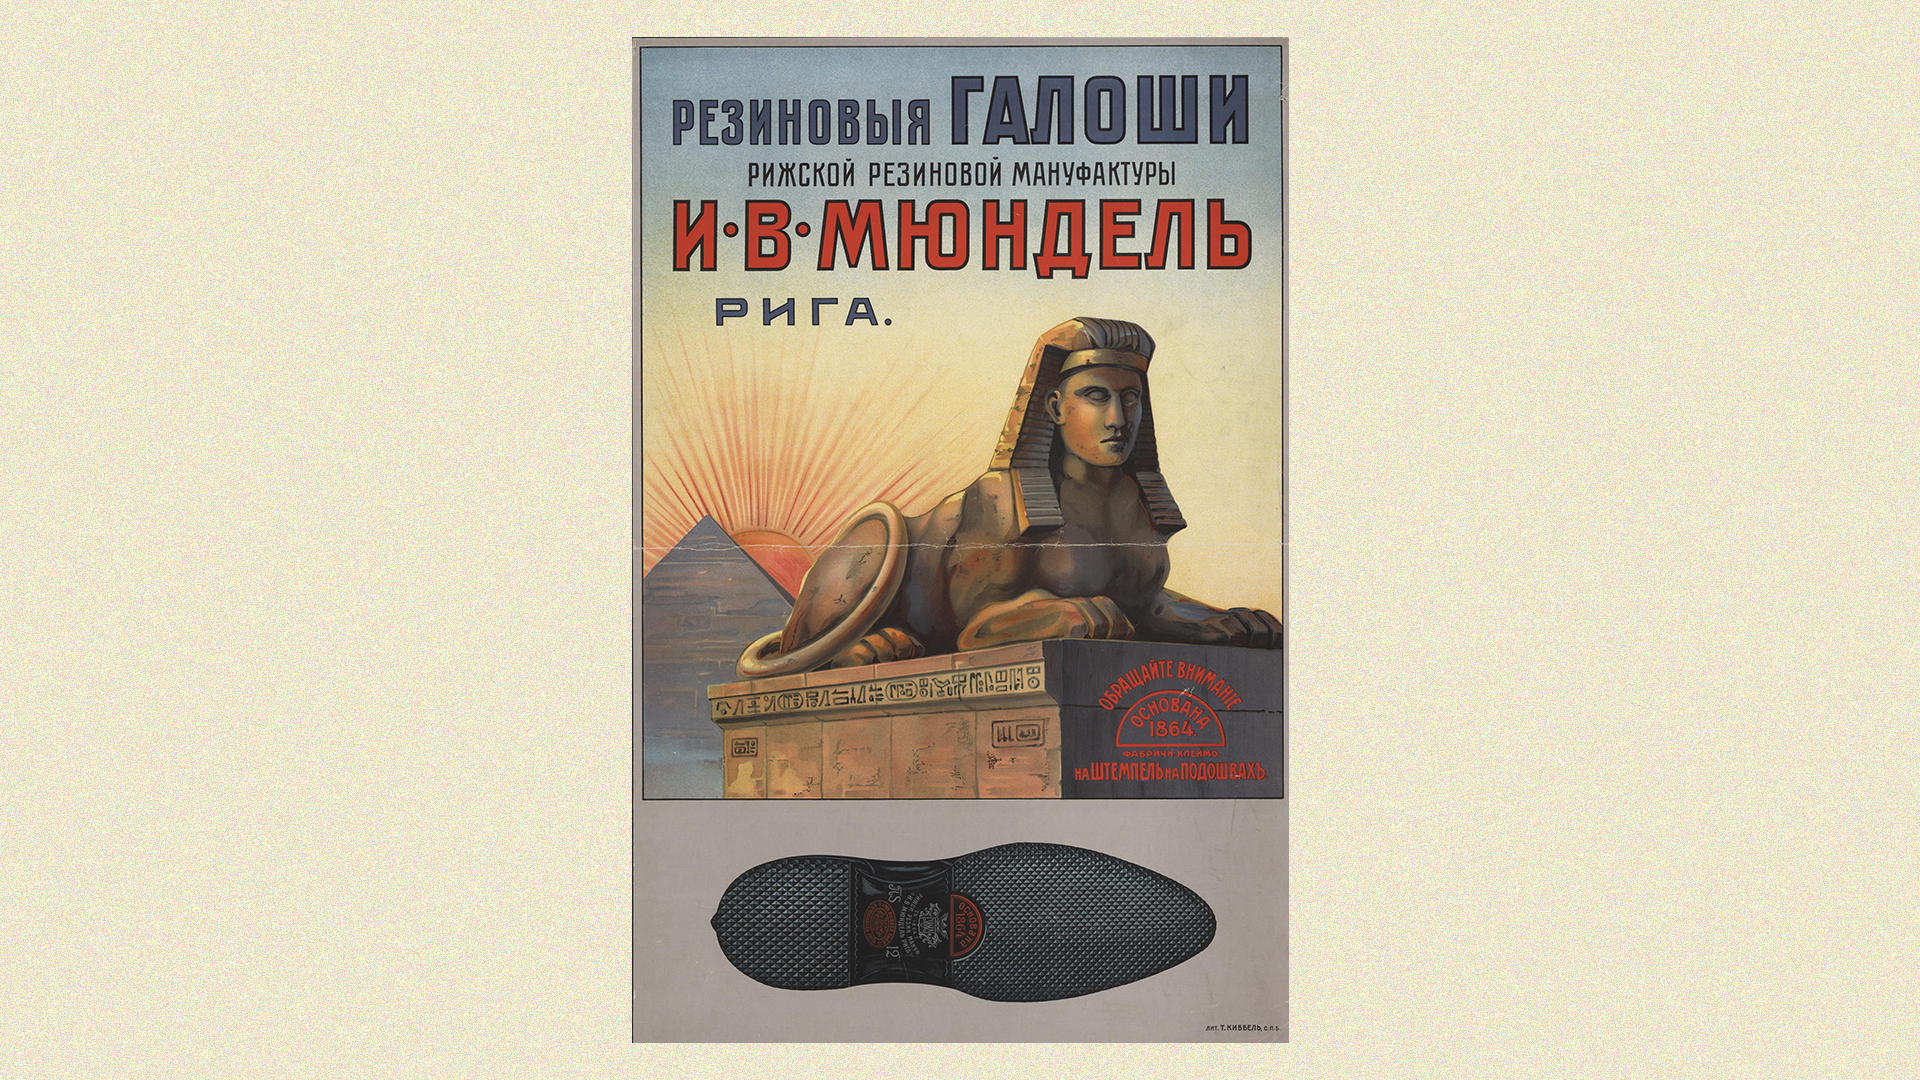 на плакатах компании «И.В. Мюндель», рекламирующих резиновую обувь, появились египетские пирамиды и фигура сфинкса